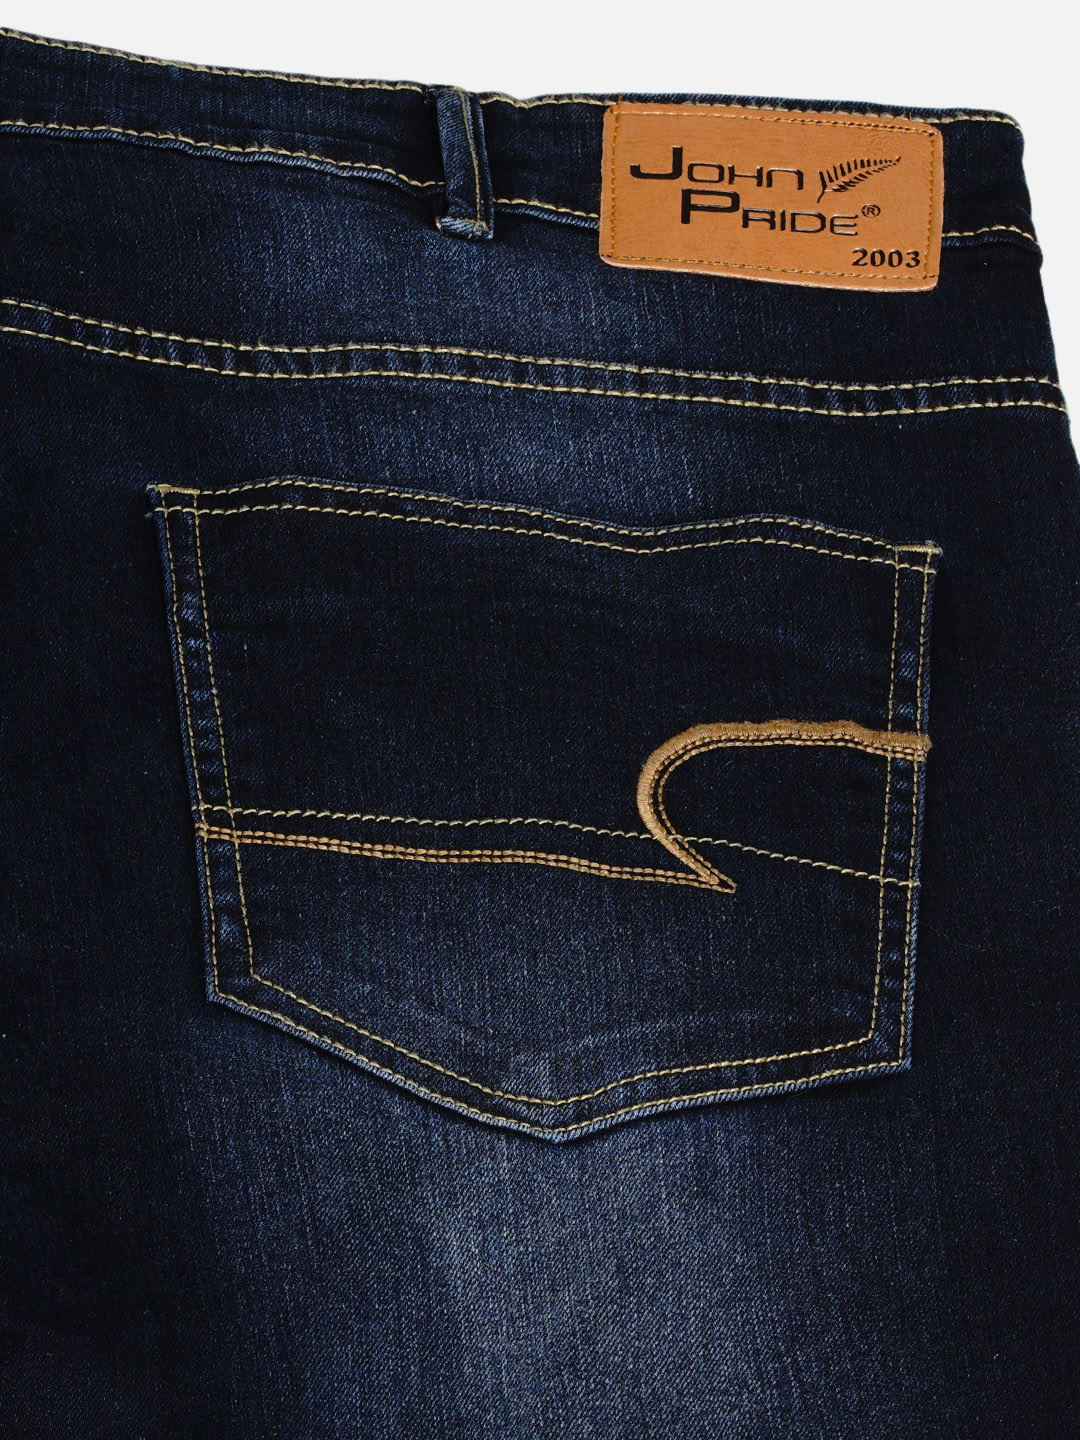 affordables/jeans/EJPJ25005/ejpj25005-2.jpg